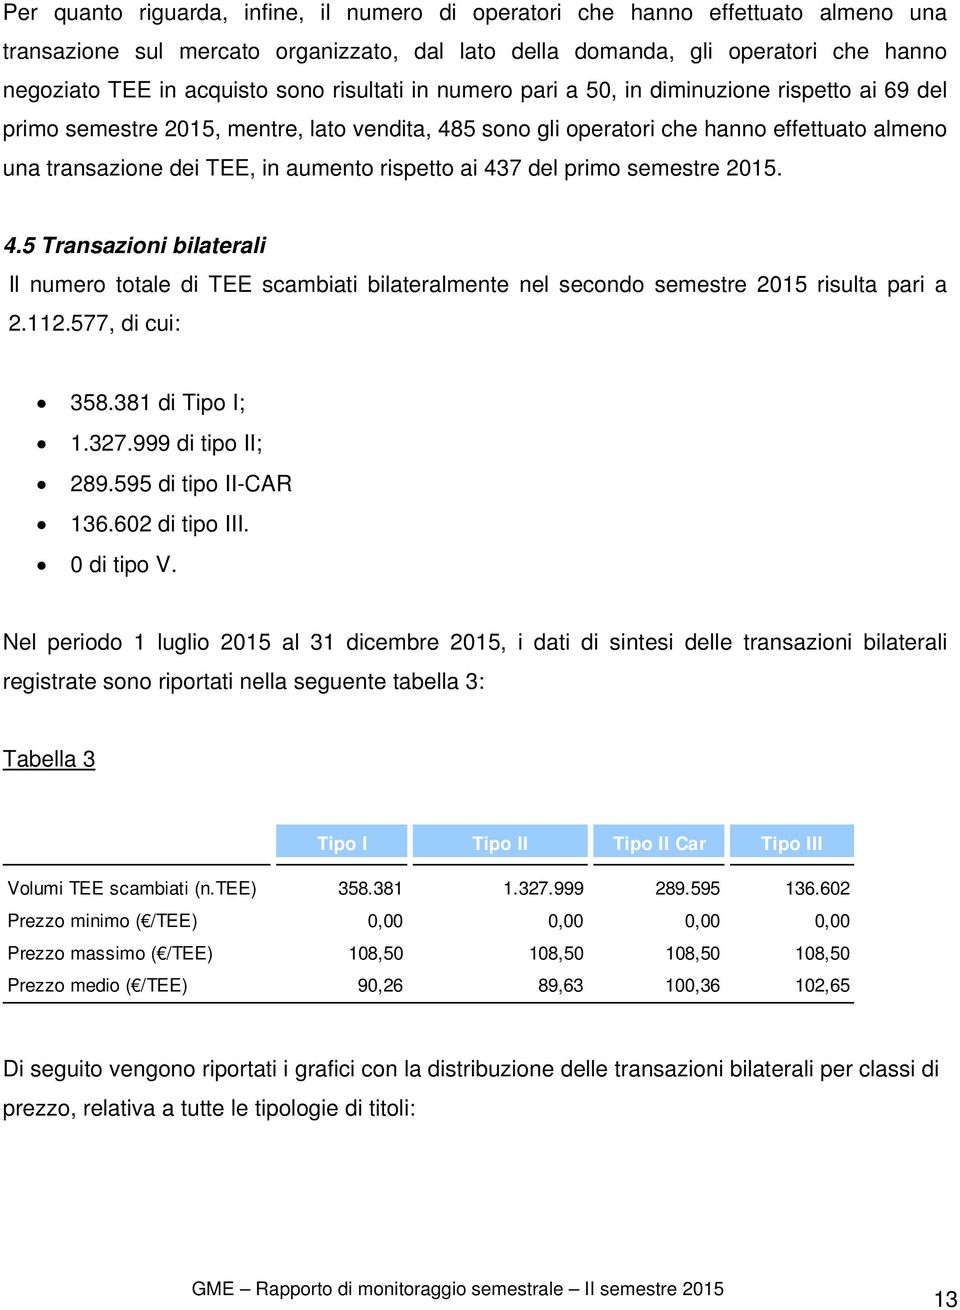 rispetto ai 437 del primo semestre 2015. 4.5 Transazioni bilaterali Il numero totale di TEE scambiati bilateralmente nel secondo semestre 2015 risulta pari a 2.112.577, di cui: 358.381 di Tipo I; 1.